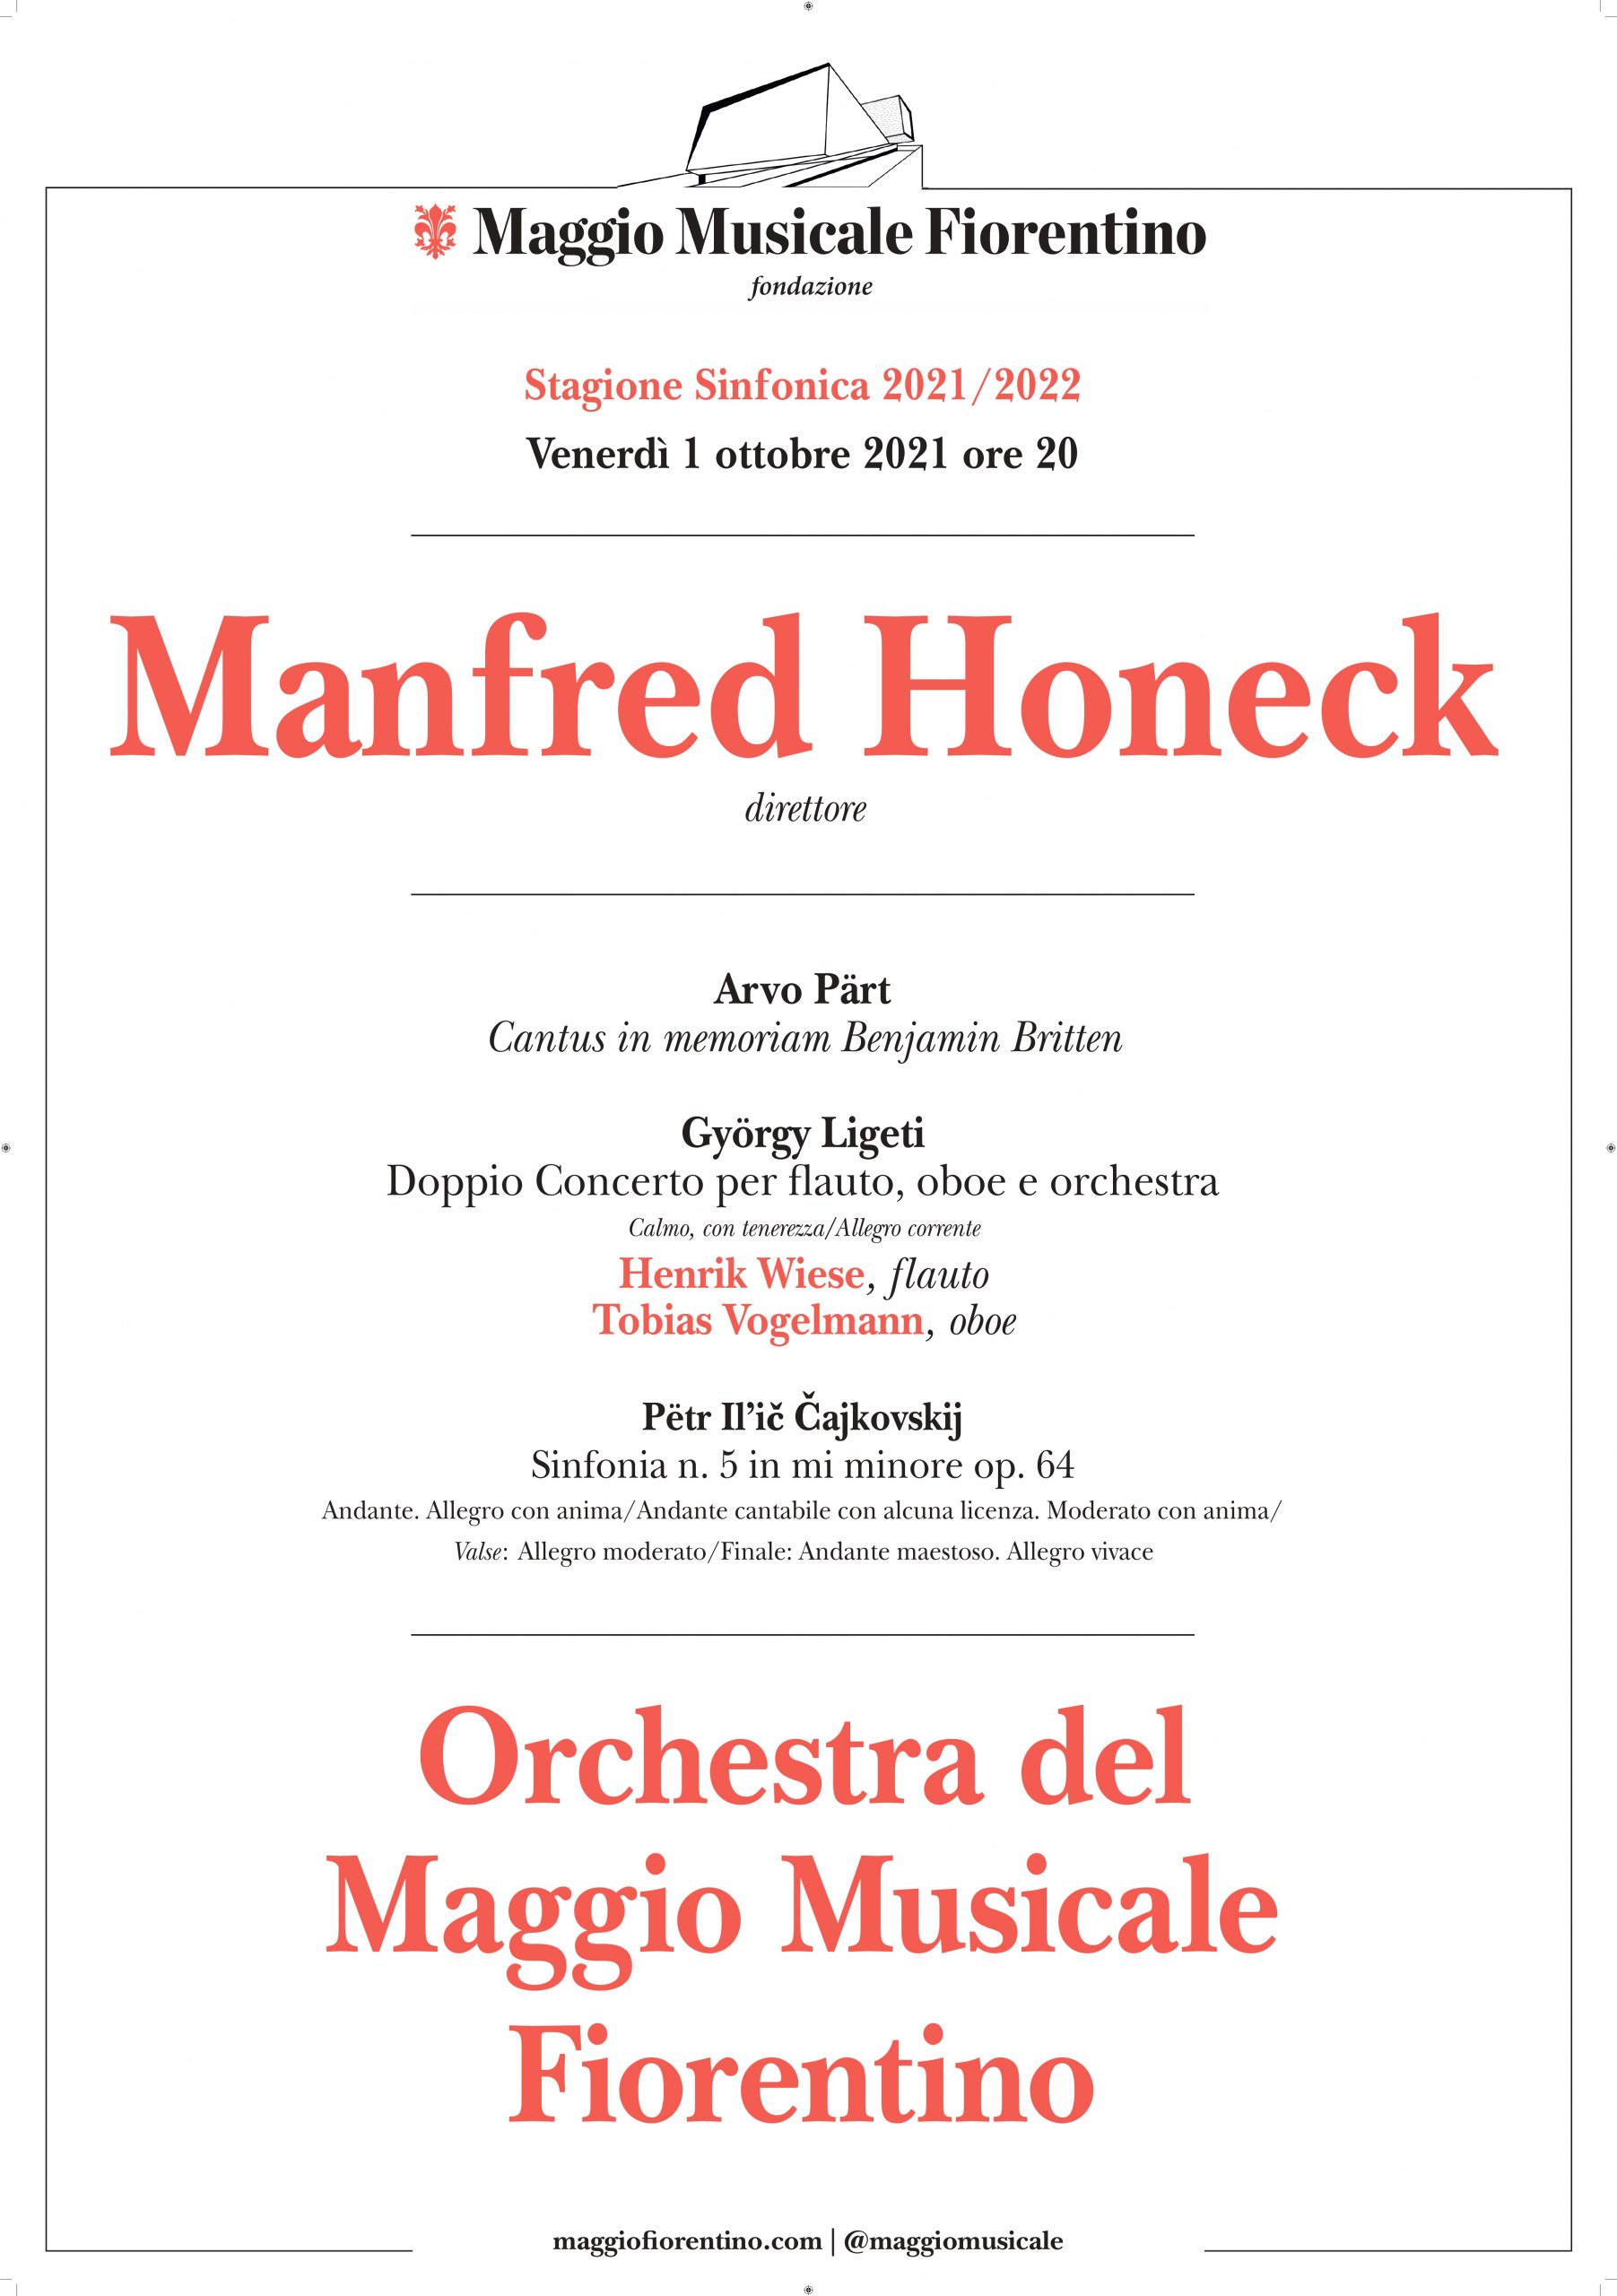 Manfred Honeck sul podio alla guida dell’Orchestra del Maggio Musicale Fiorentino, locandina